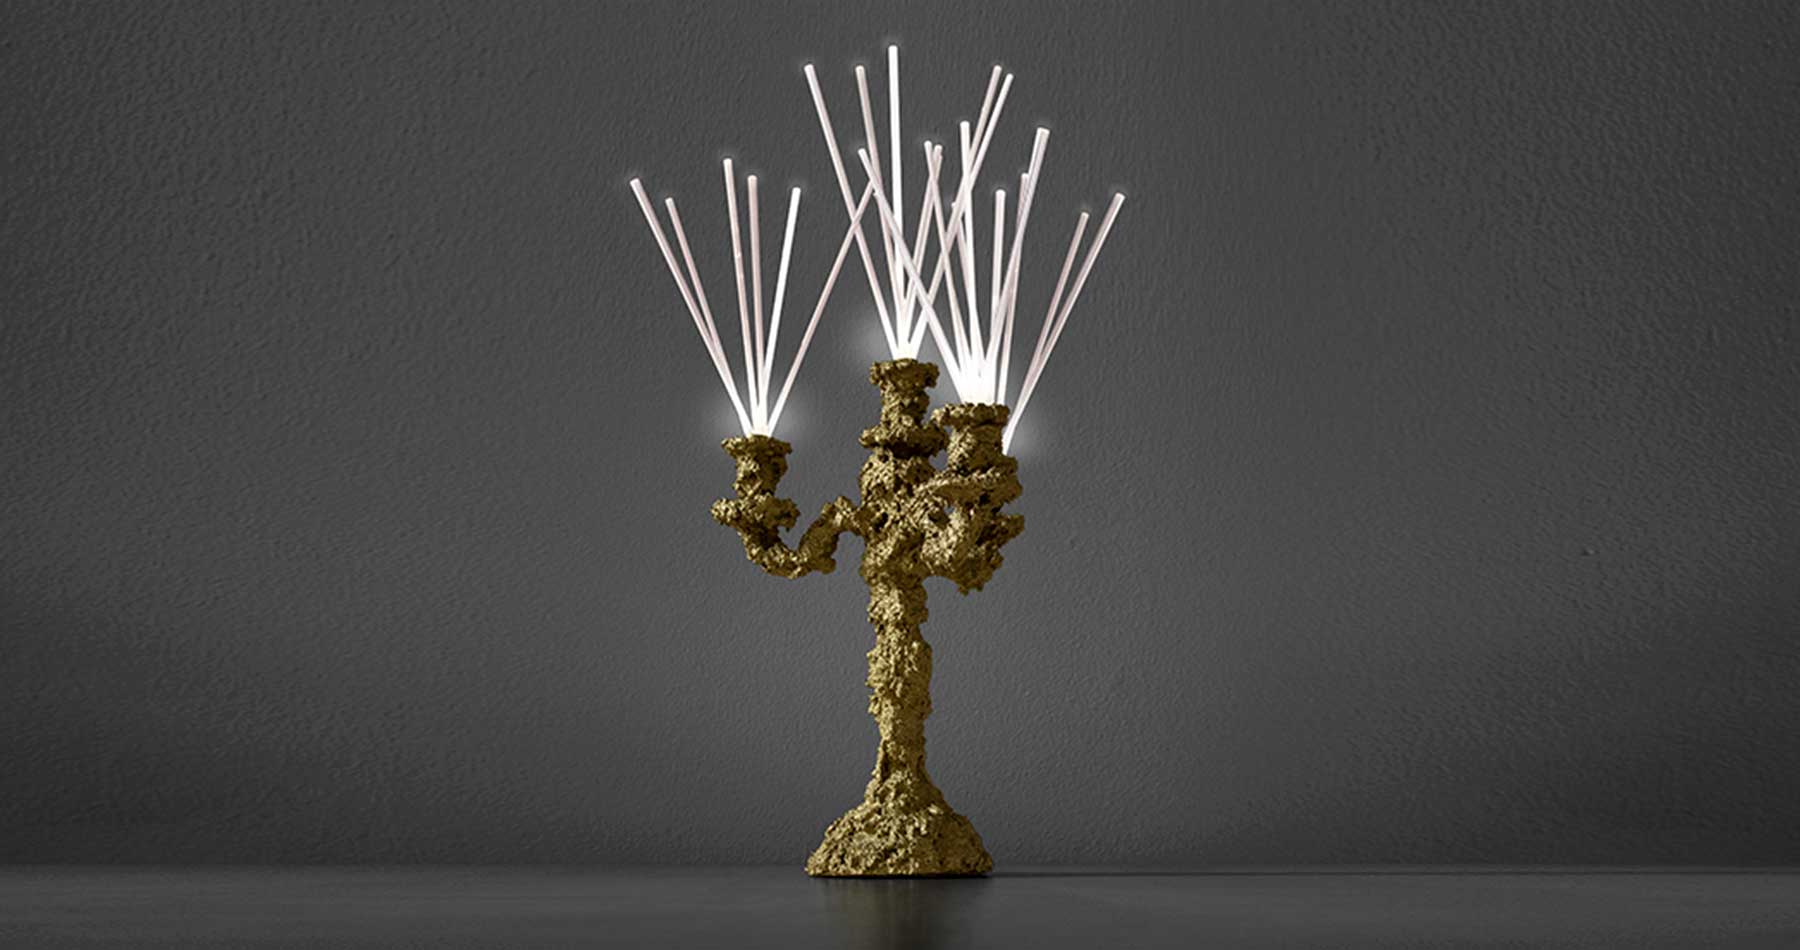 Lamp Secret light, gold, photo 1, design by Guerraz, production by LuceControCorrente